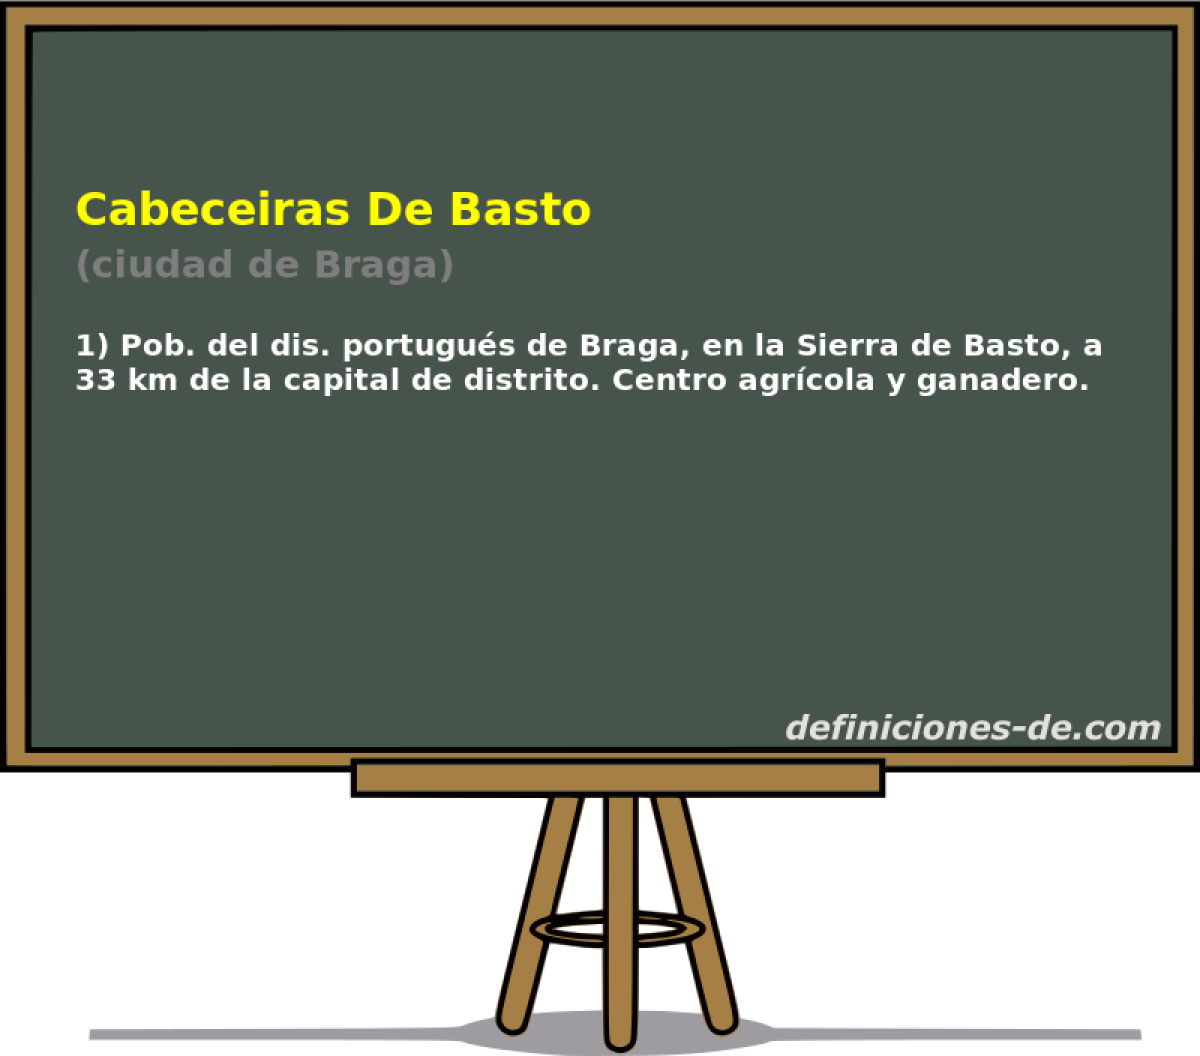 Cabeceiras De Basto (ciudad de Braga)